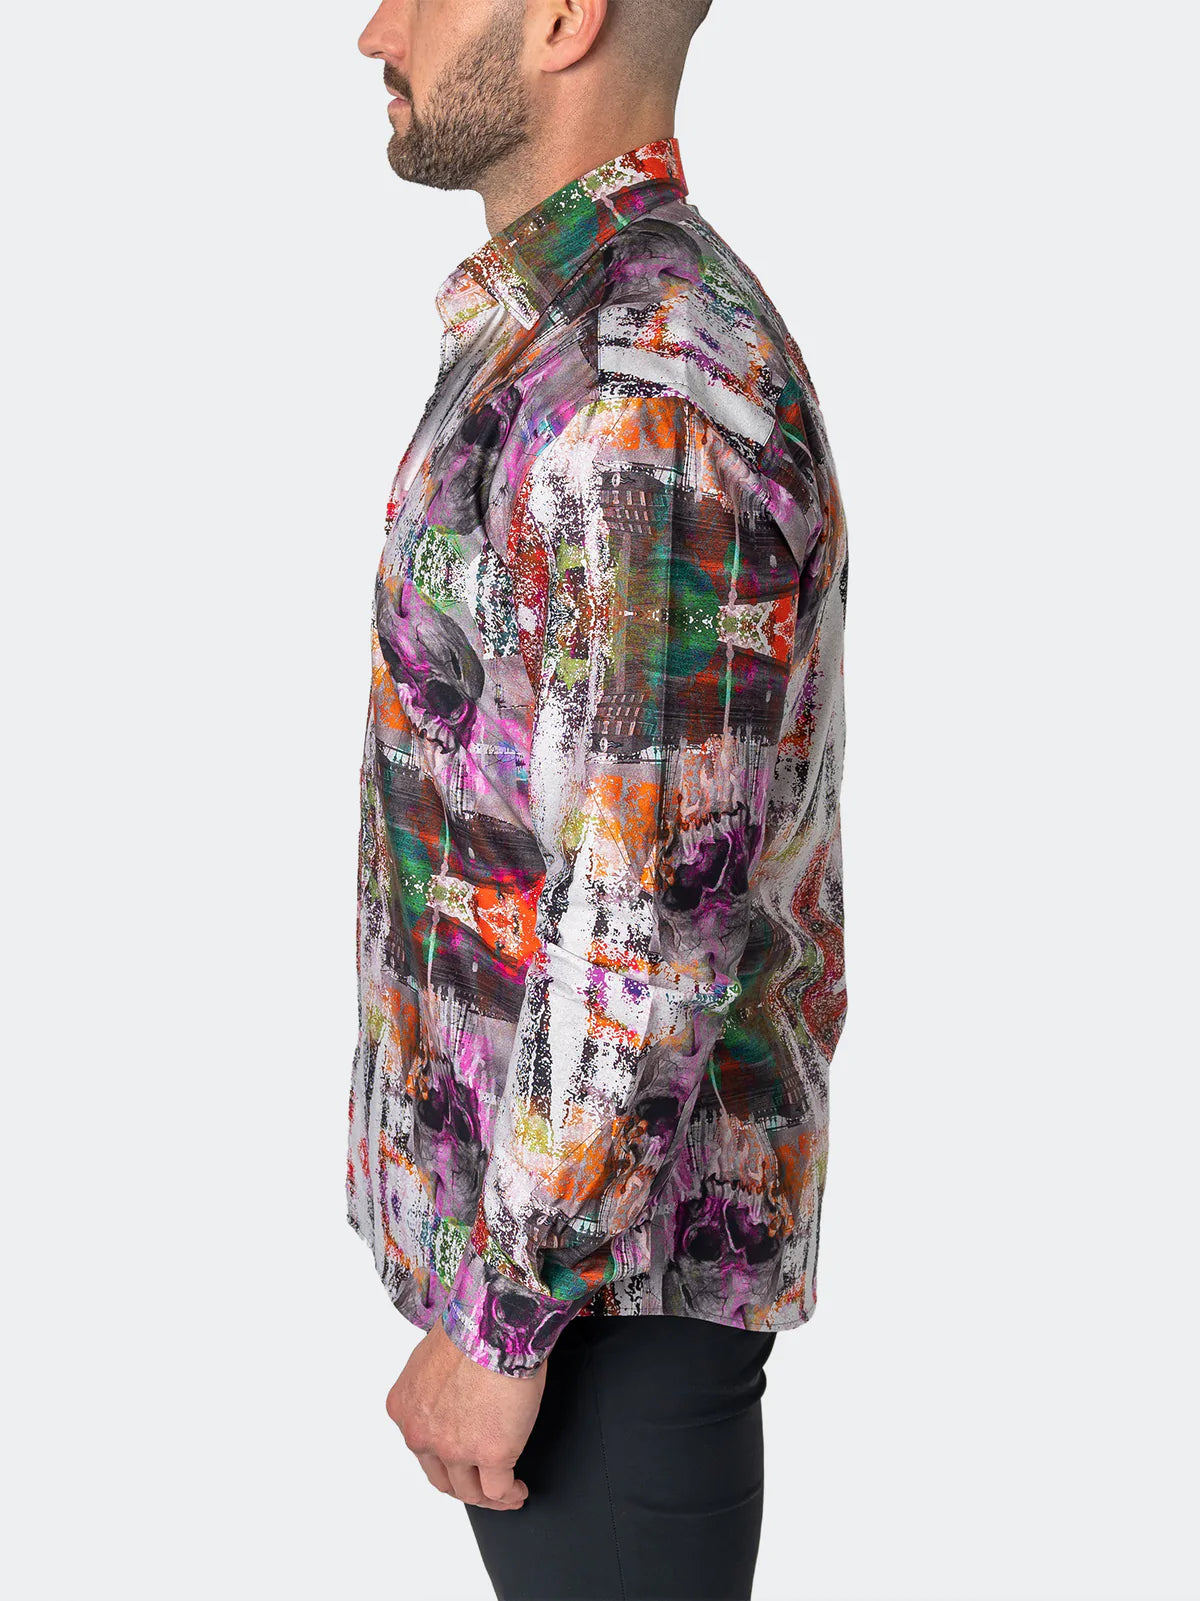 Fibonacci Long Sleeve Dress Shirt Skull Scramble Print Multi